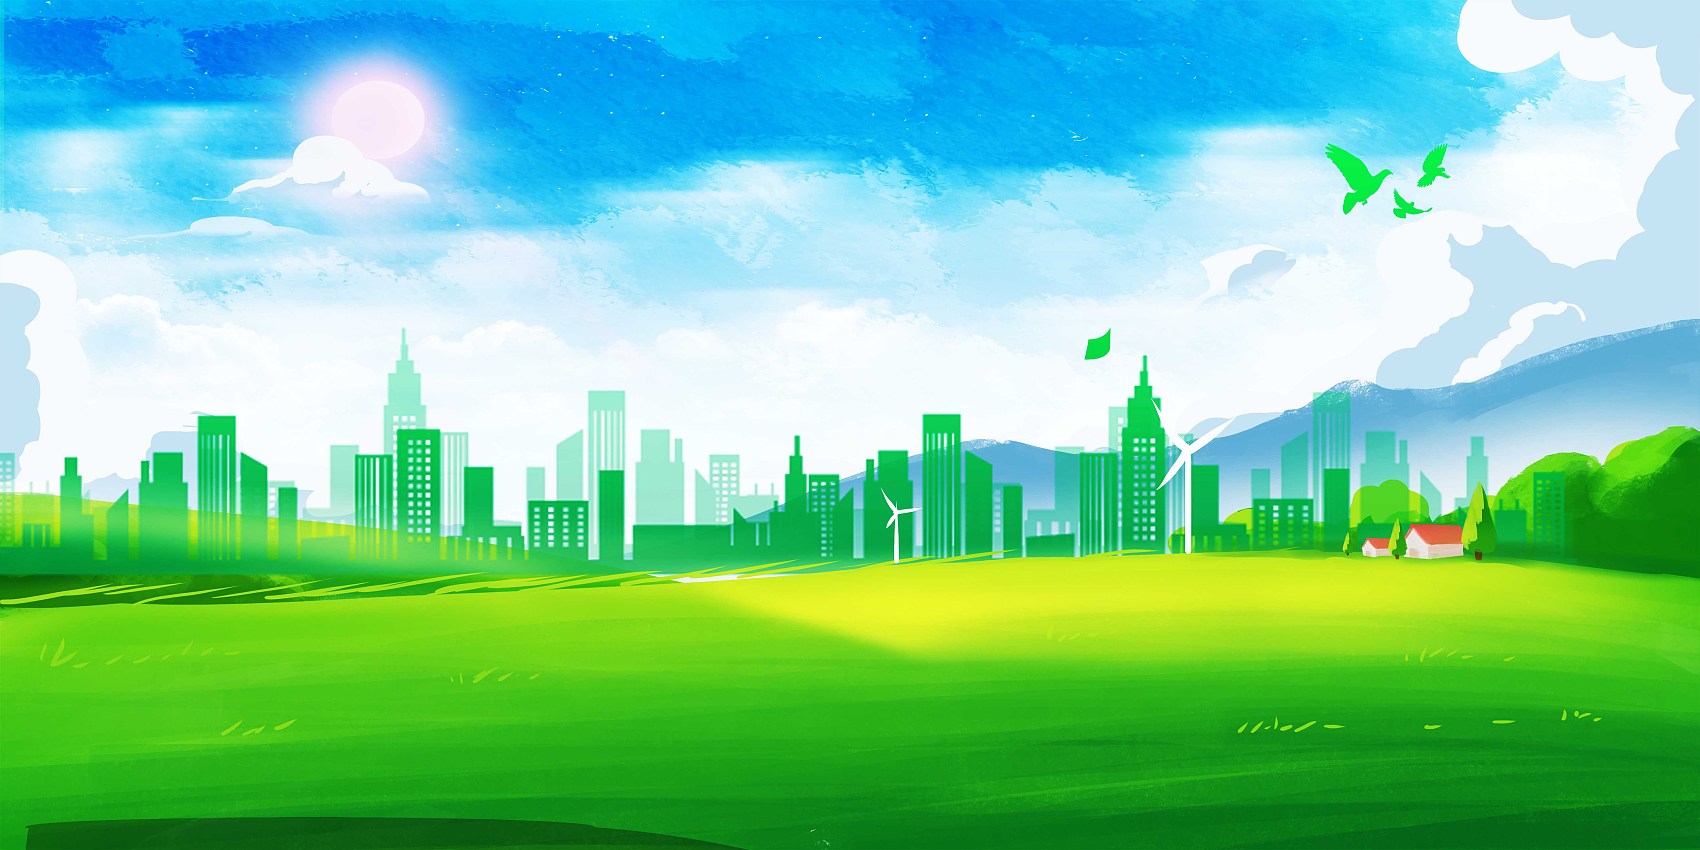 风景绿色建筑物背景图.jpg